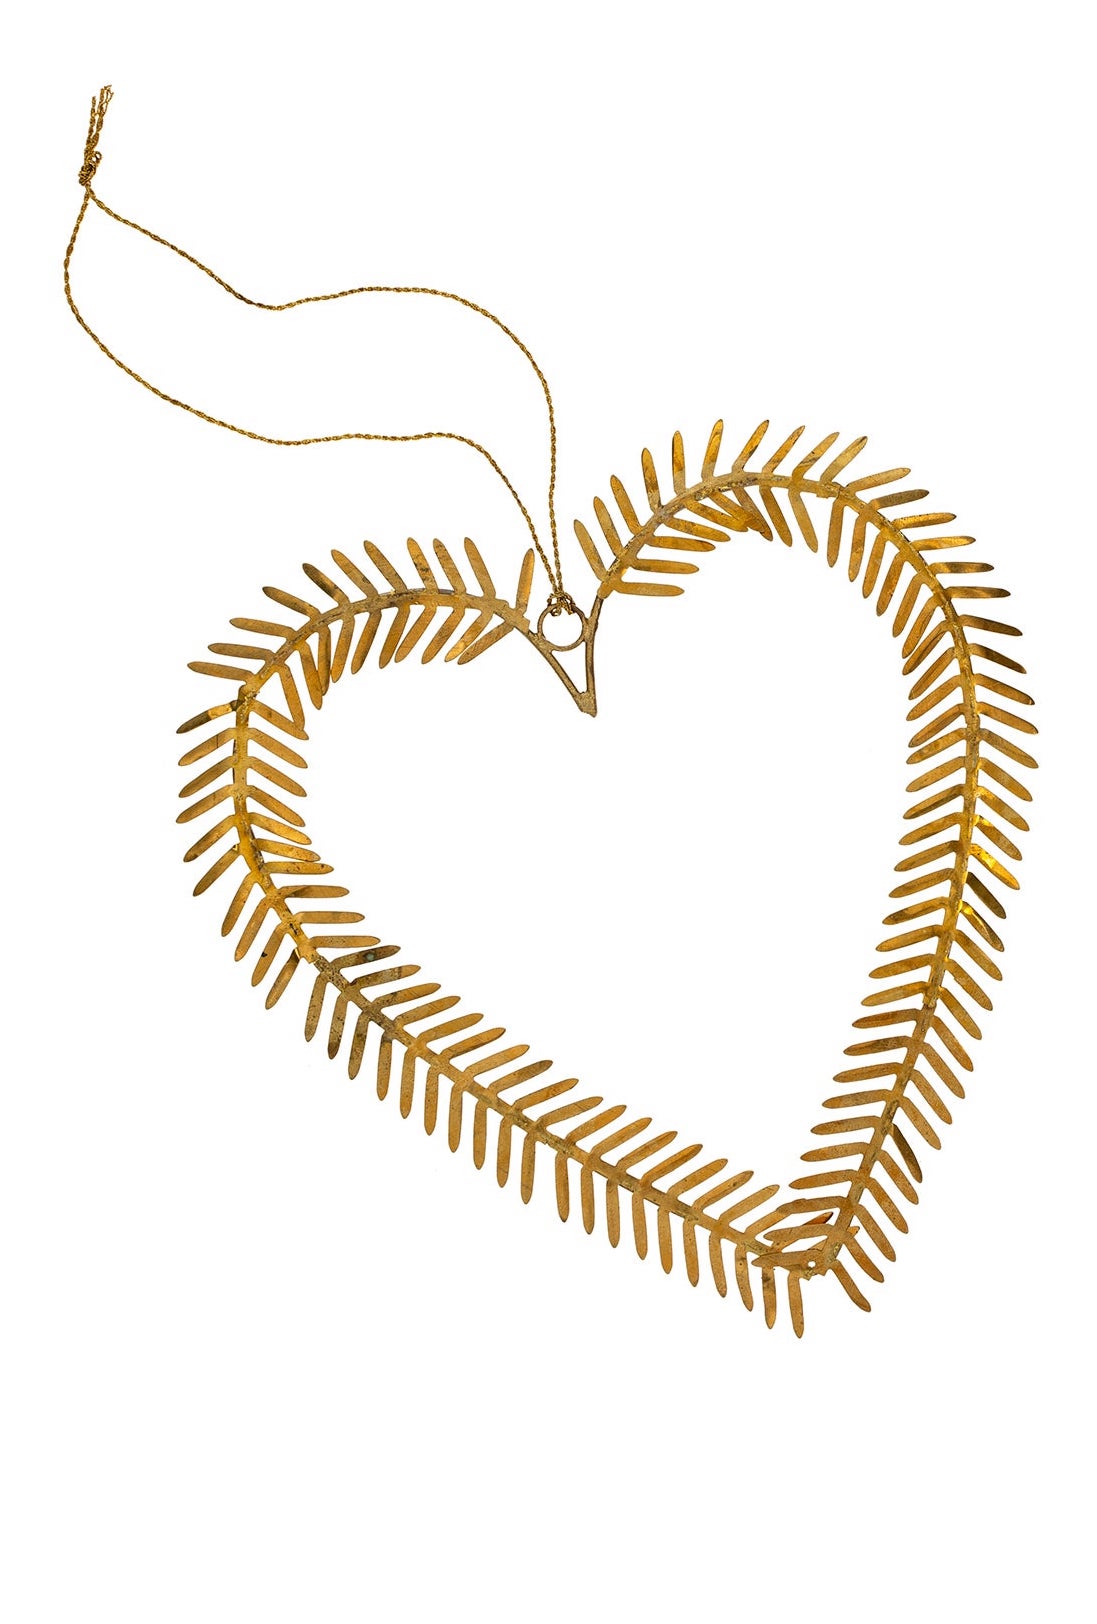 Golden Heart Ornament